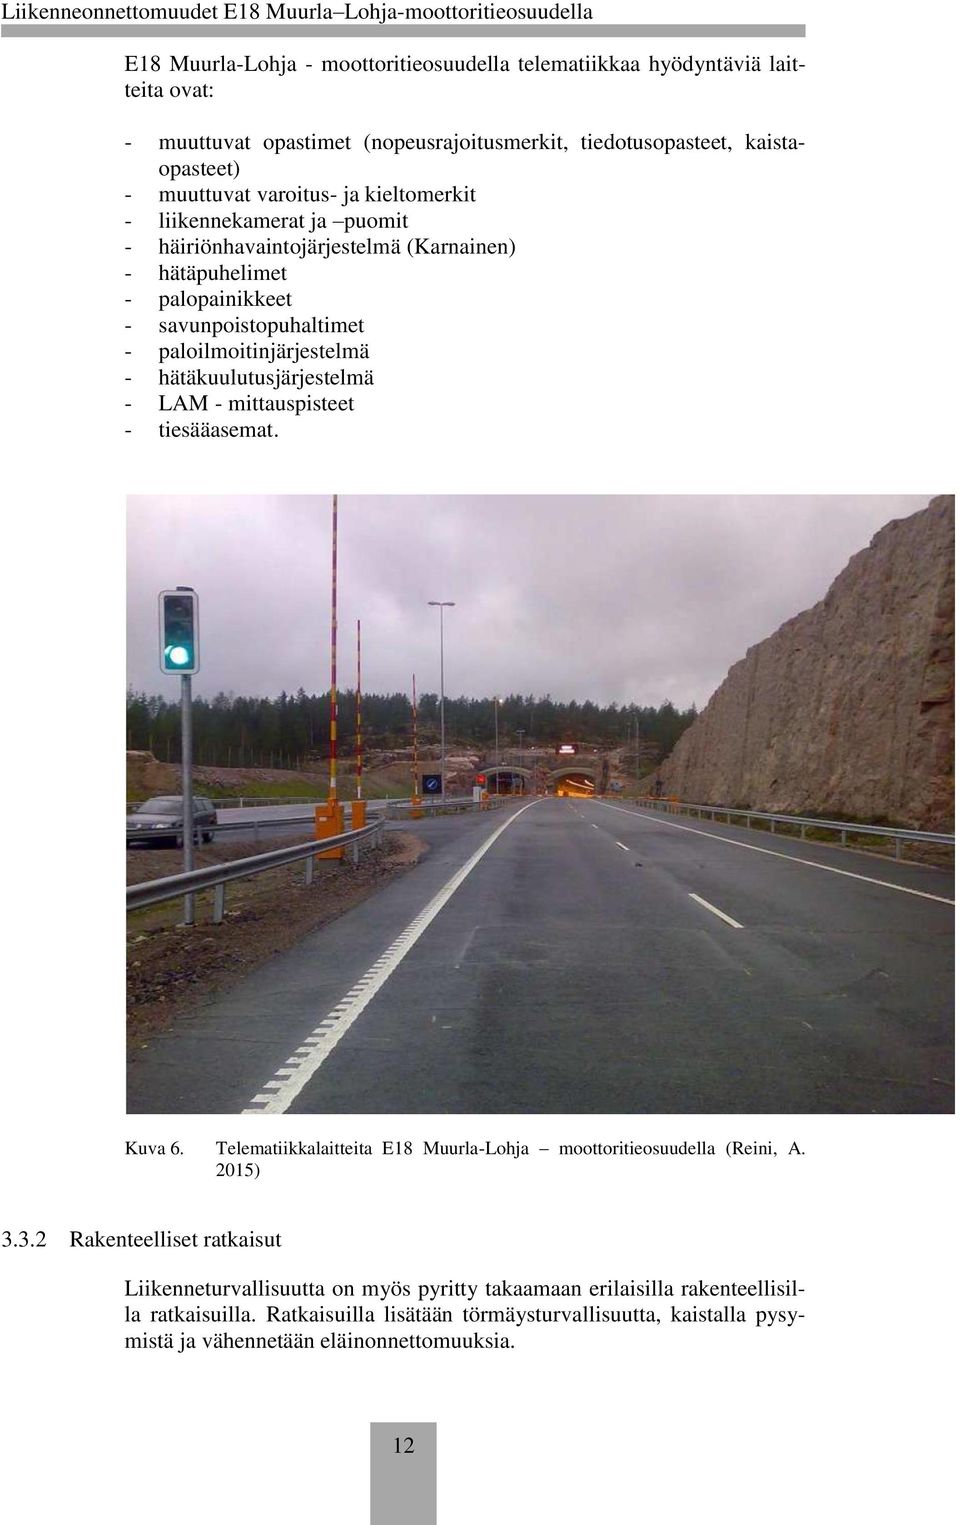 hätäkuulutusjärjestelmä - LAM - mittauspisteet - tiesääasemat. Kuva 6. Telematiikkalaitteita E18 Muurla-Lohja moottoritieosuudella (Reini, A. 2015) 3.